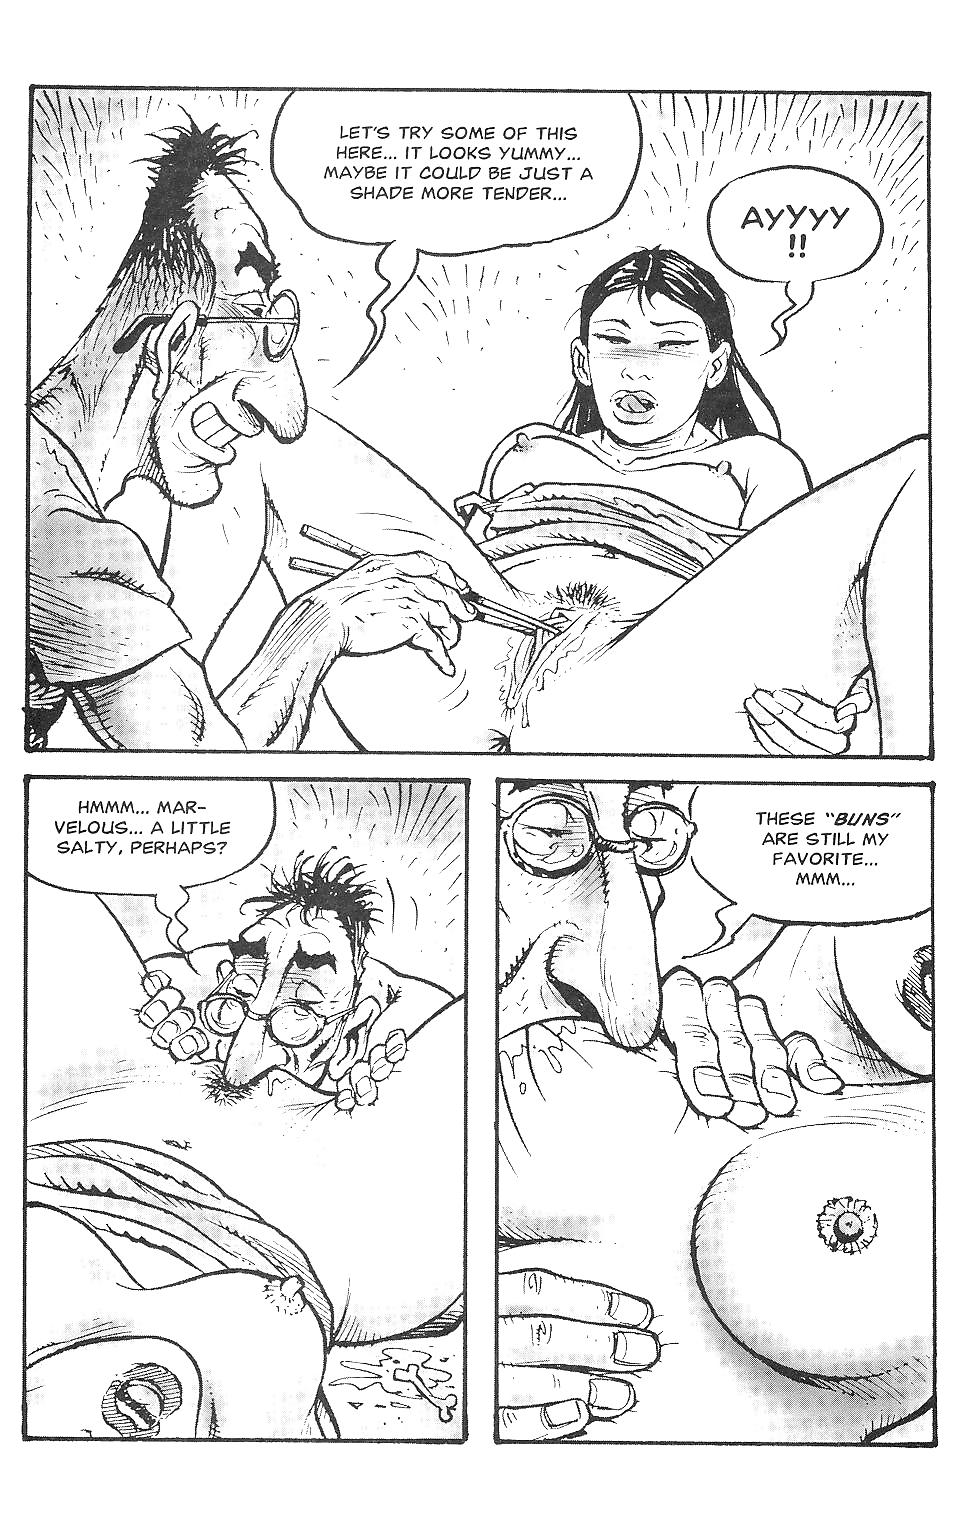 Orientierungen Sexuelle Belästigung Comics #17273455